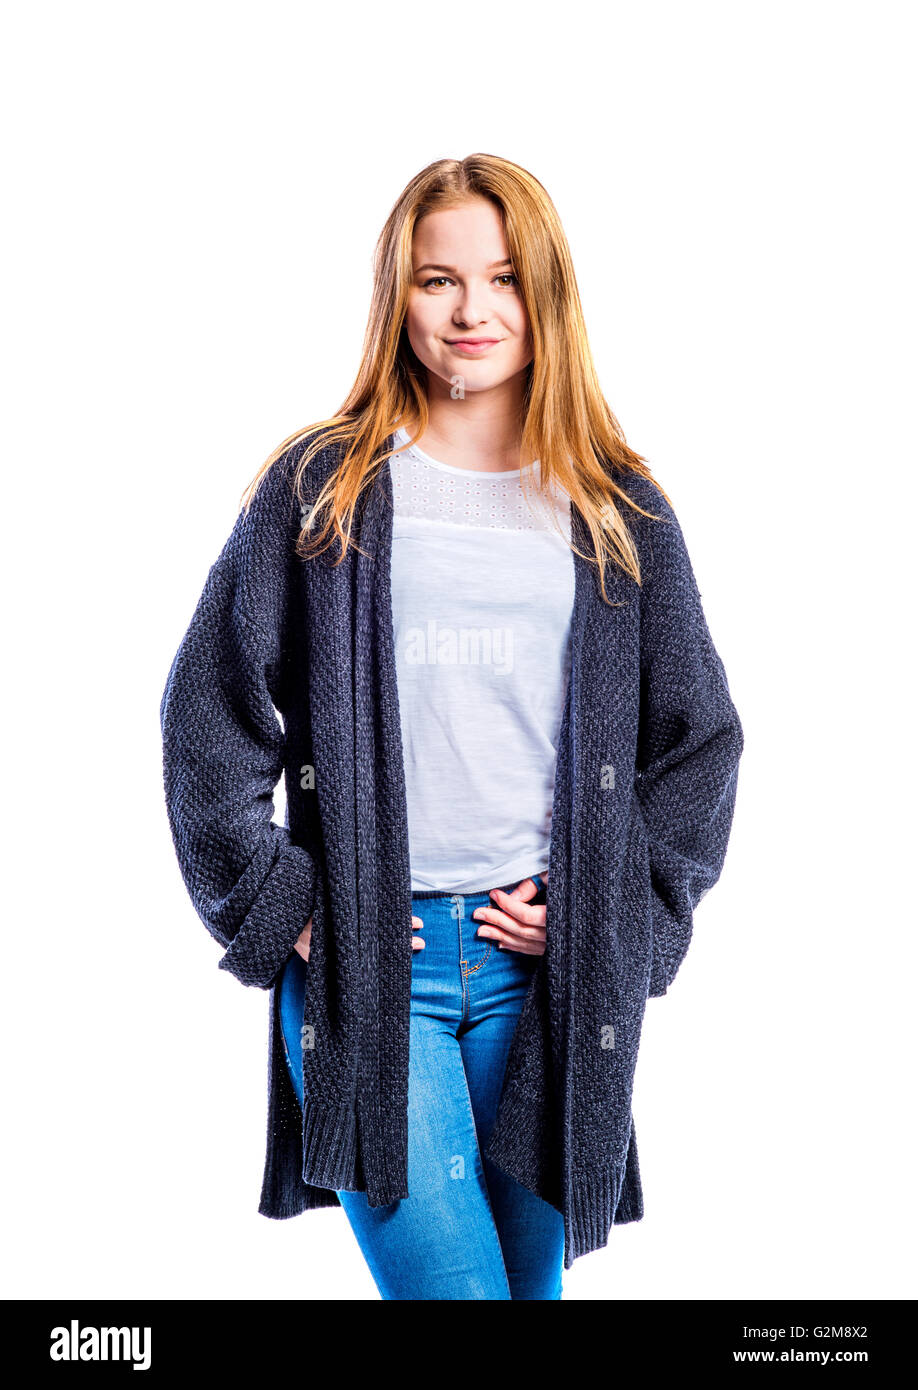 Adolescente en jeans et pull long gris, jeune femme, studio shot on white  background, isolé Photo Stock - Alamy